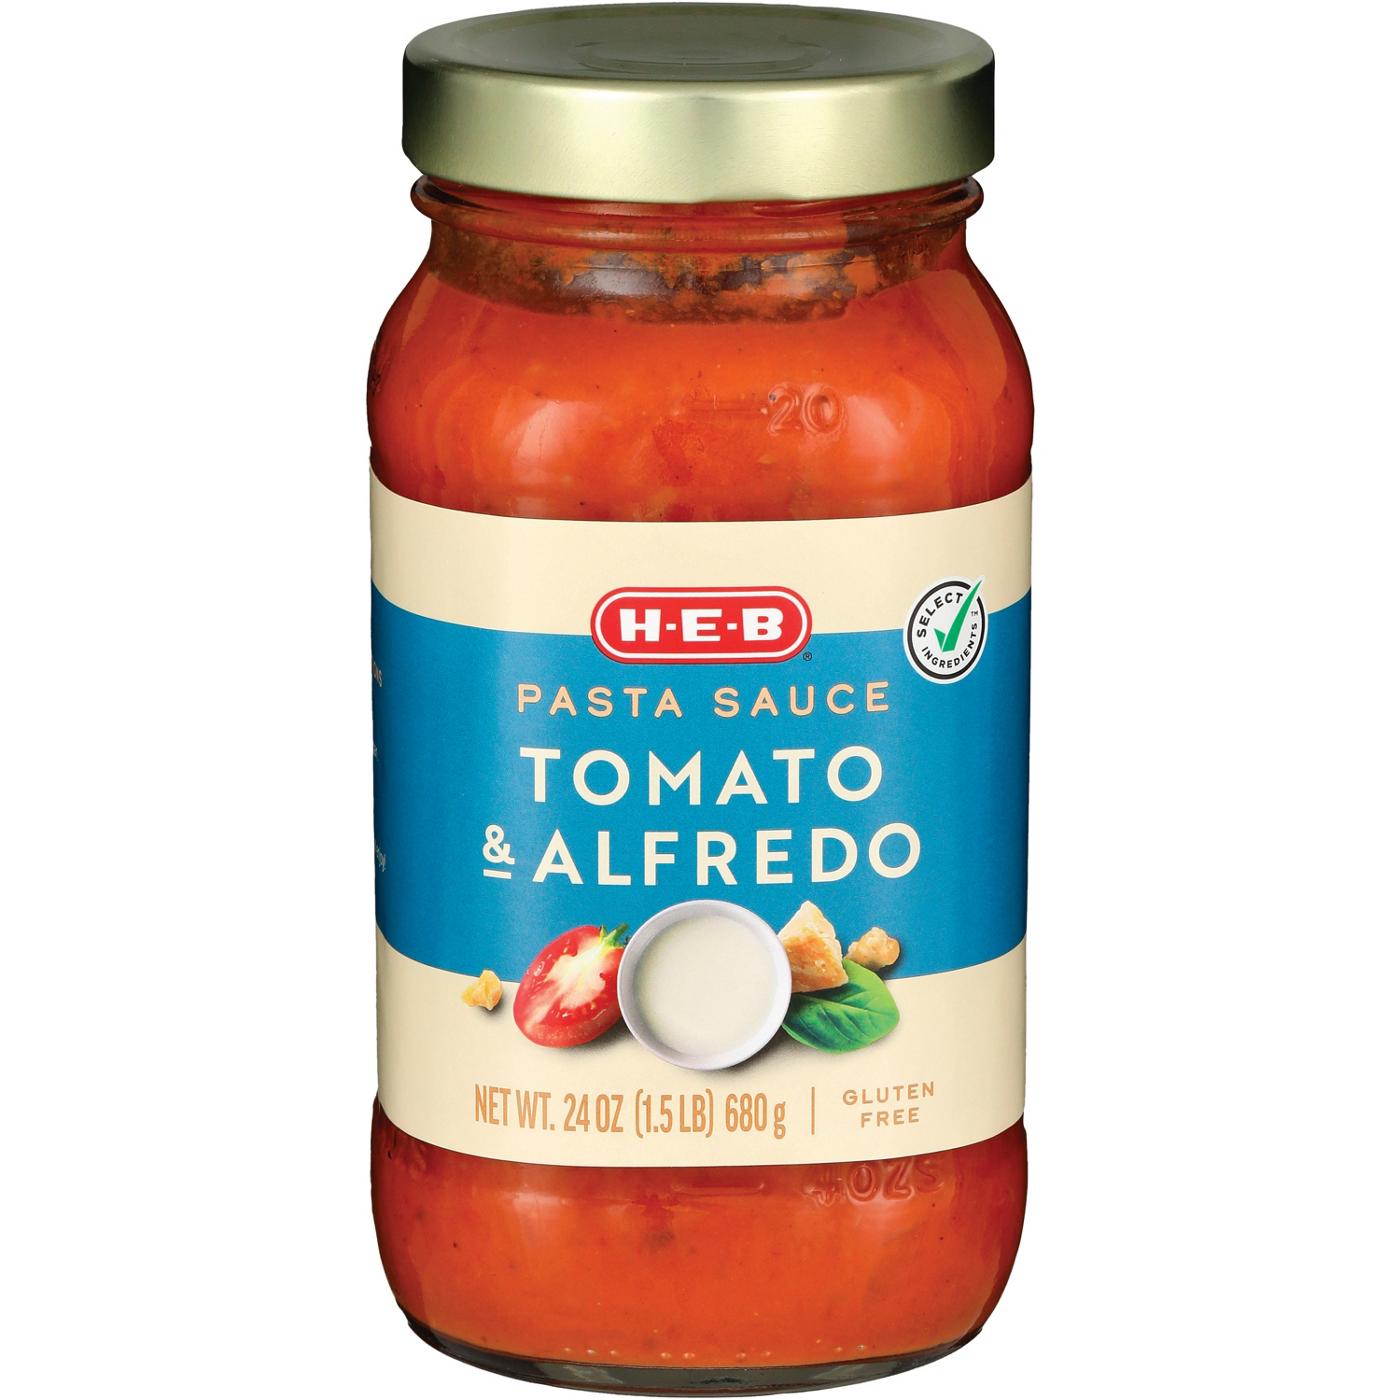 H-E-B Tomato & Alfredo Pasta Sauce; image 2 of 2